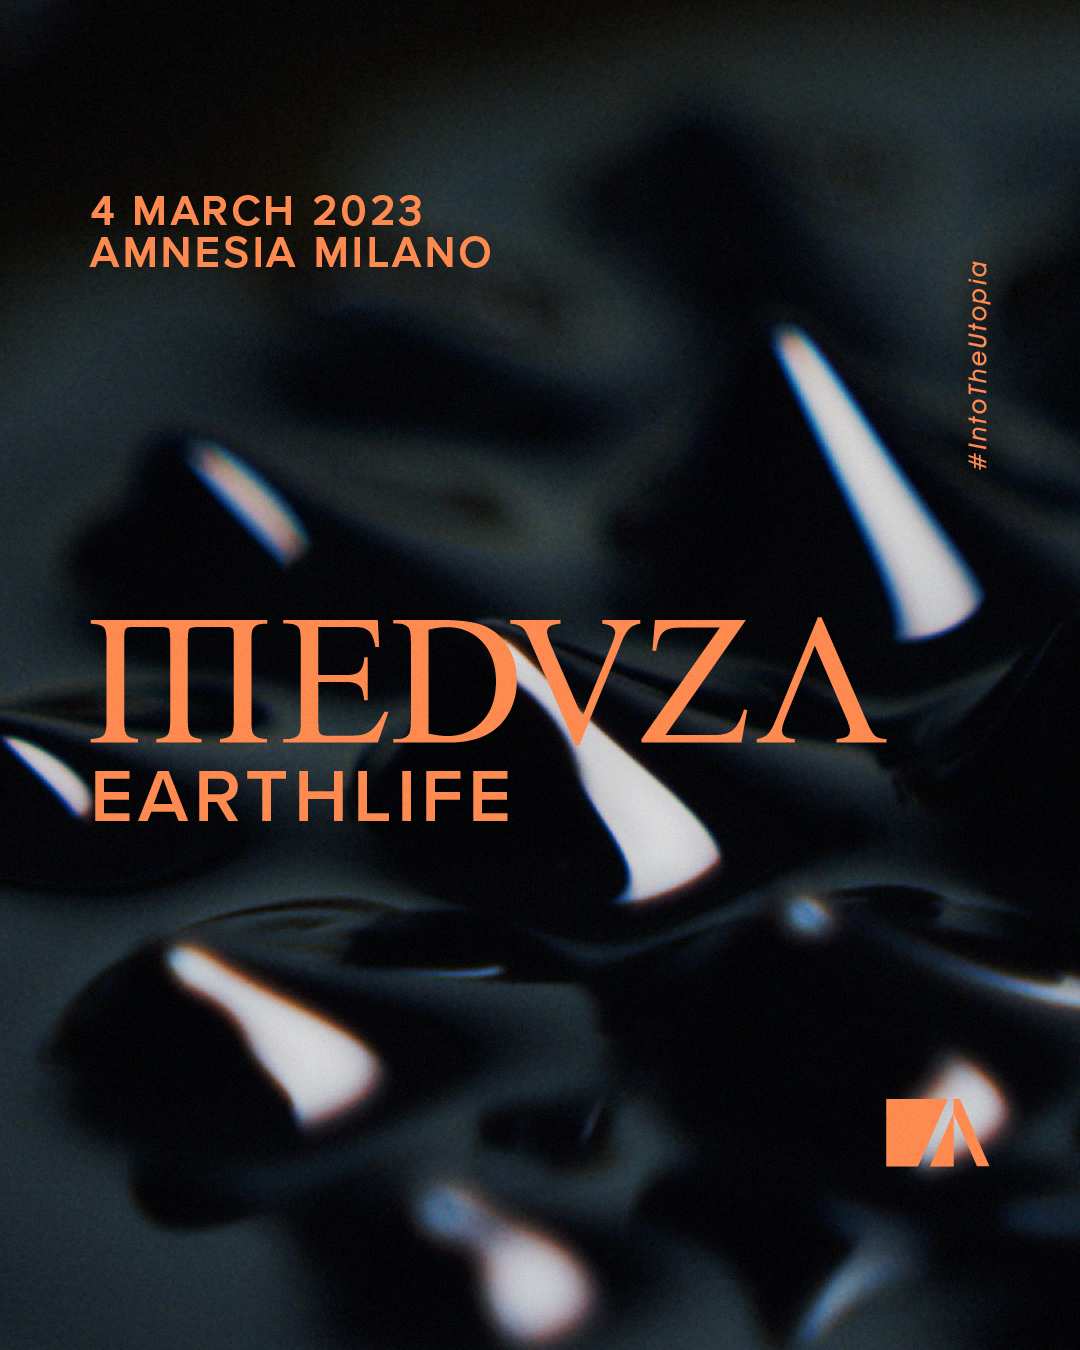 Amnesia Meduza Milano Sabato 4 Marzo 2023 - info 351-6641431